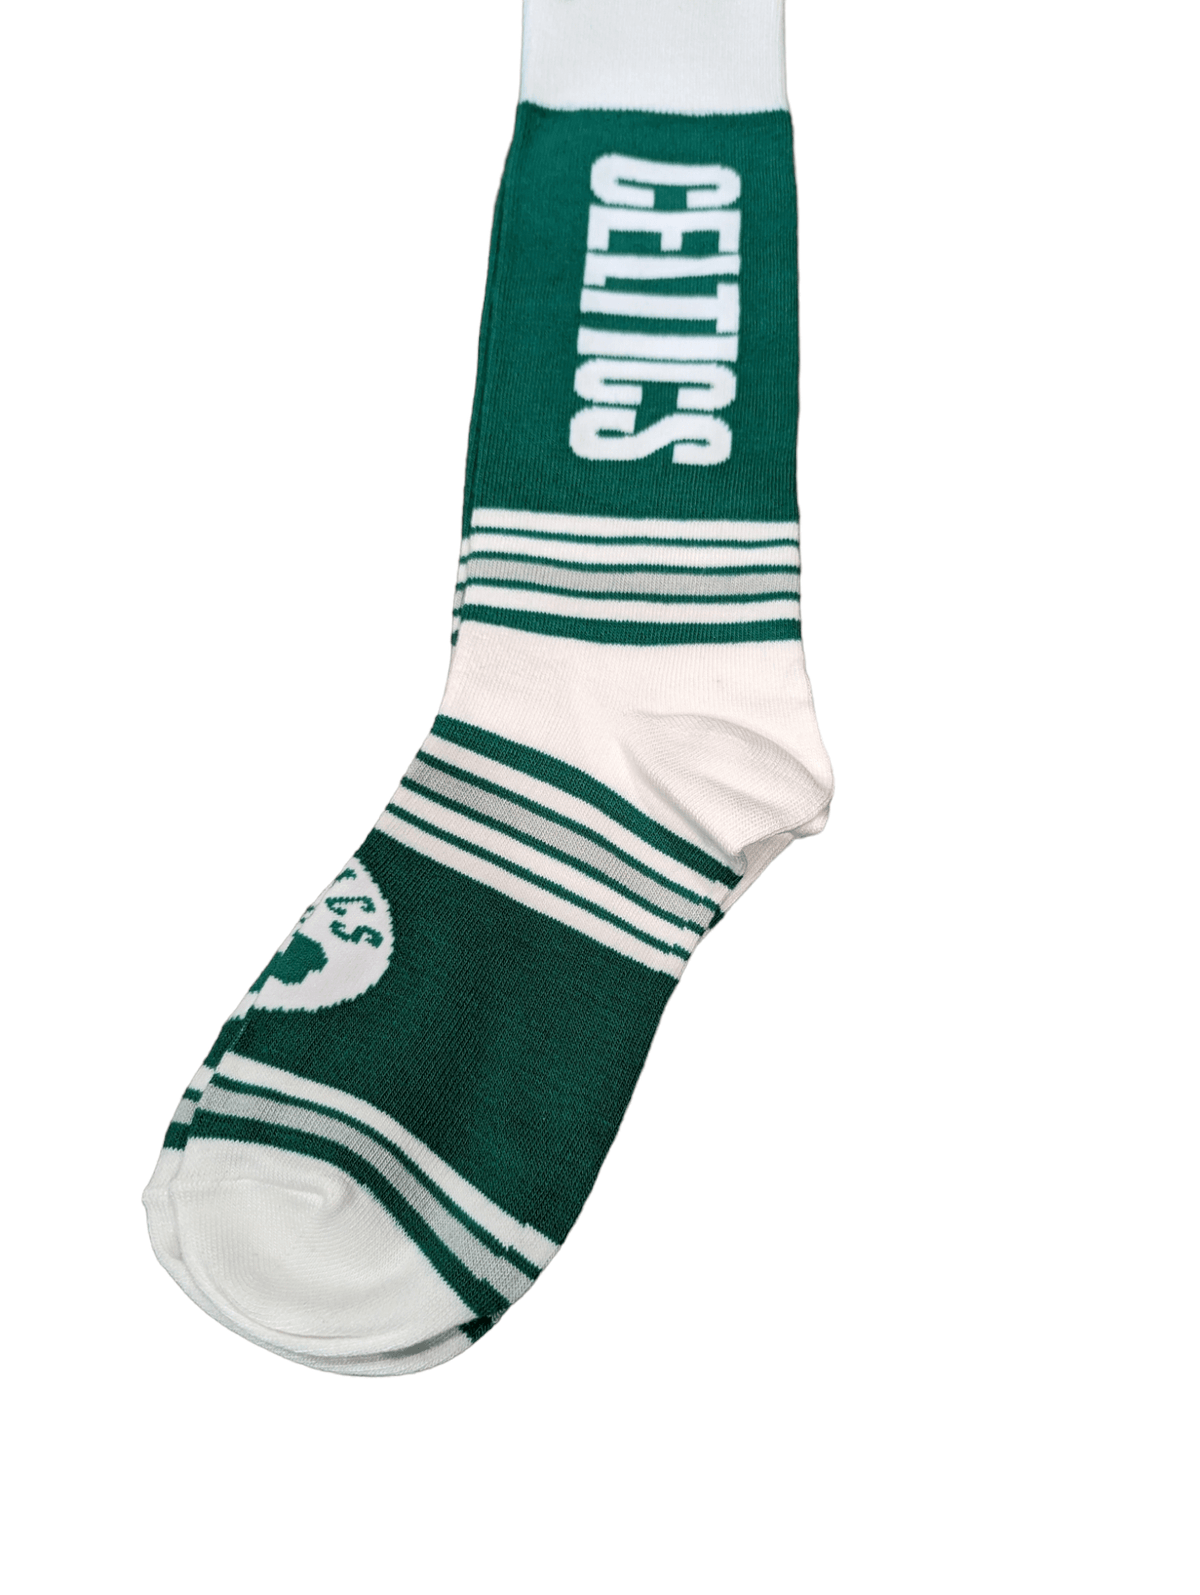 For Bare Feet Socks Boston Celtics Go Team Socks